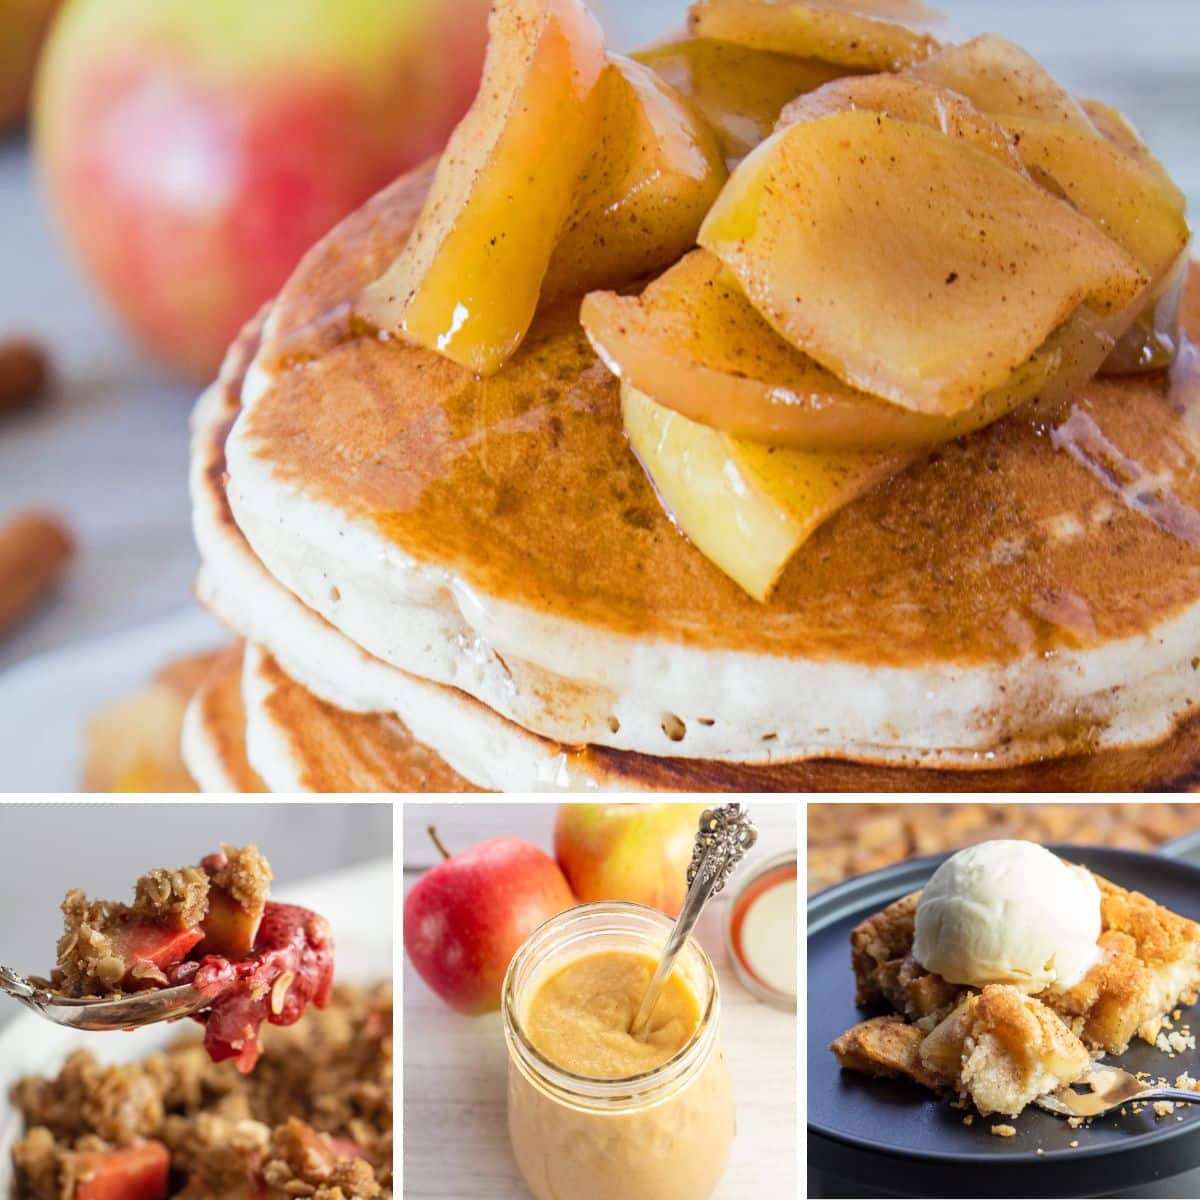 أفضل وصفات التفاح لتحضيرها والاستمتاع بها في أي يوم من أيام الأسبوع تتضمن 4 وصفات في صورة مجمعة.